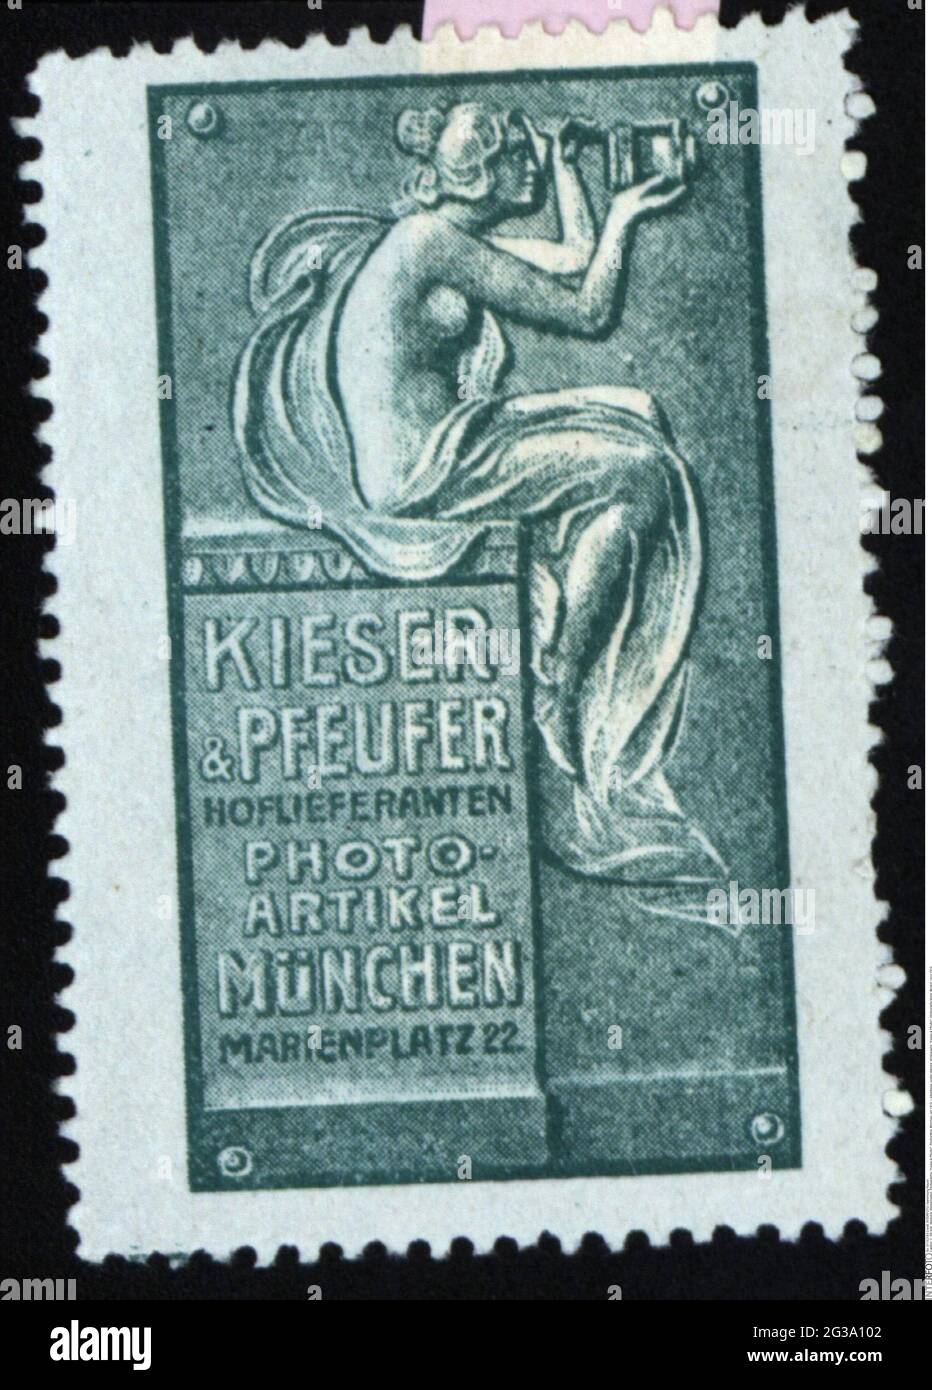 Publicité, timbres-affiches, photographie, « Kieser & Pfeufer », articles de photographie, MUNICH, VERS 1910, INFO-DROITS-AUTORISATION-SUPPLÉMENTAIRES-NON-DISPONIBLE Banque D'Images